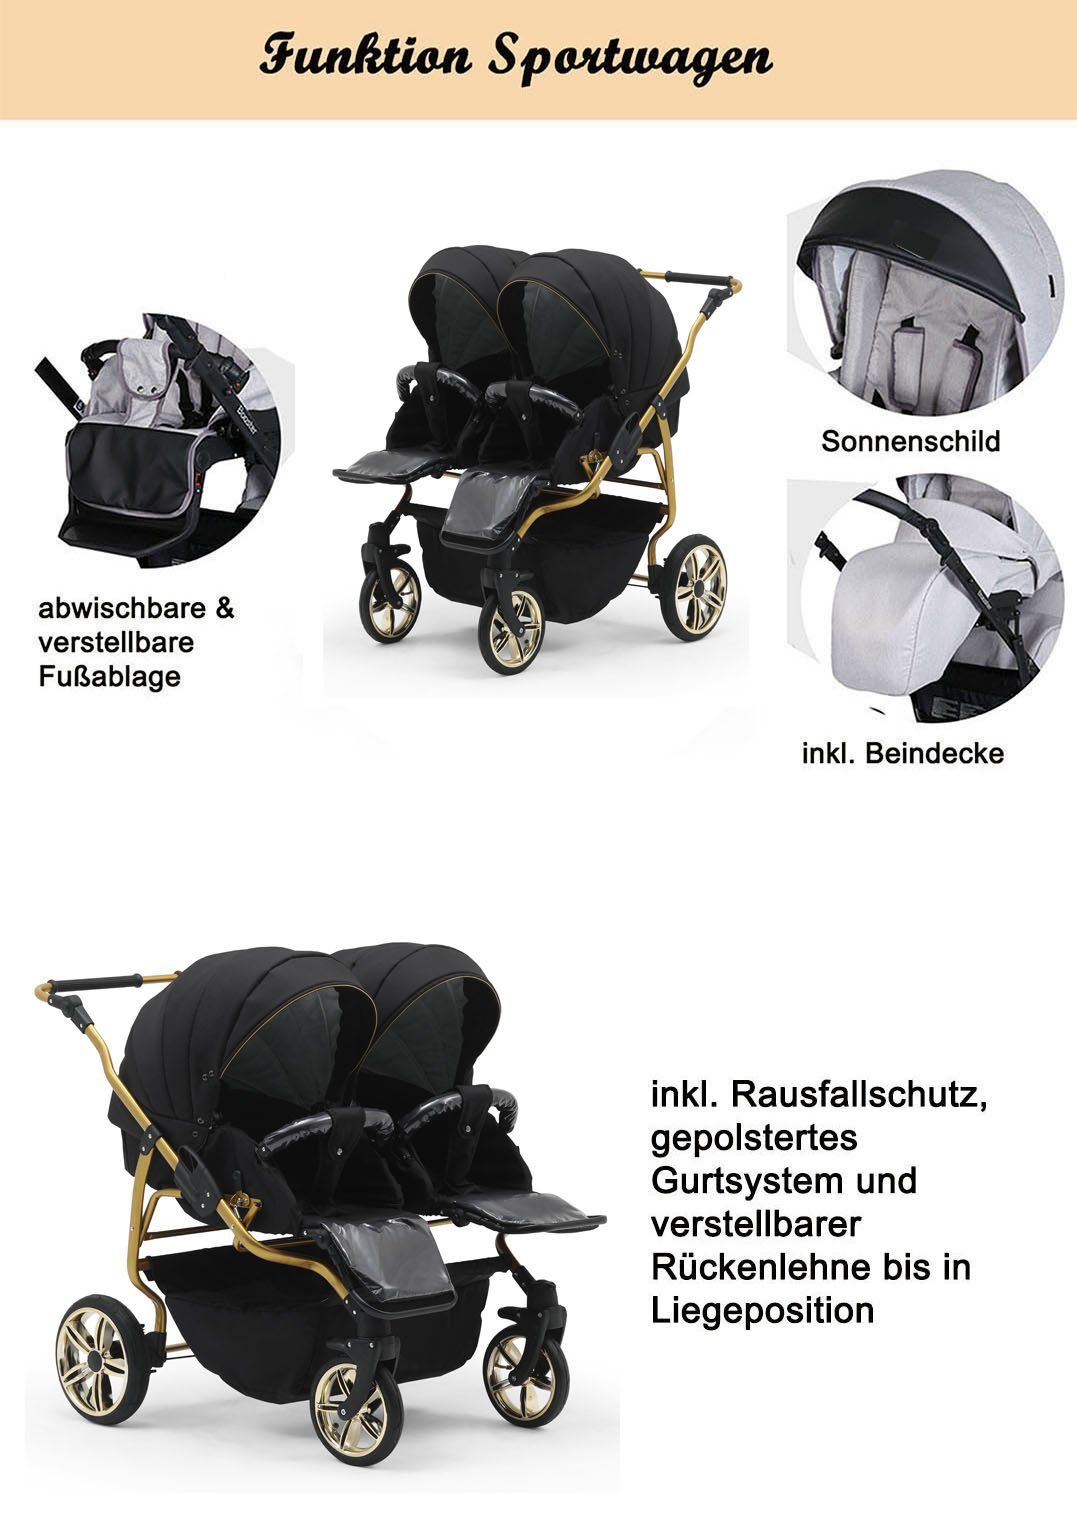 33 Gold Teile 4 15 in Zwillingswagen in - Hellgrau-Dunkelgrau Farben Zwillingswagen - babies-on-wheels Duet 1 Lux